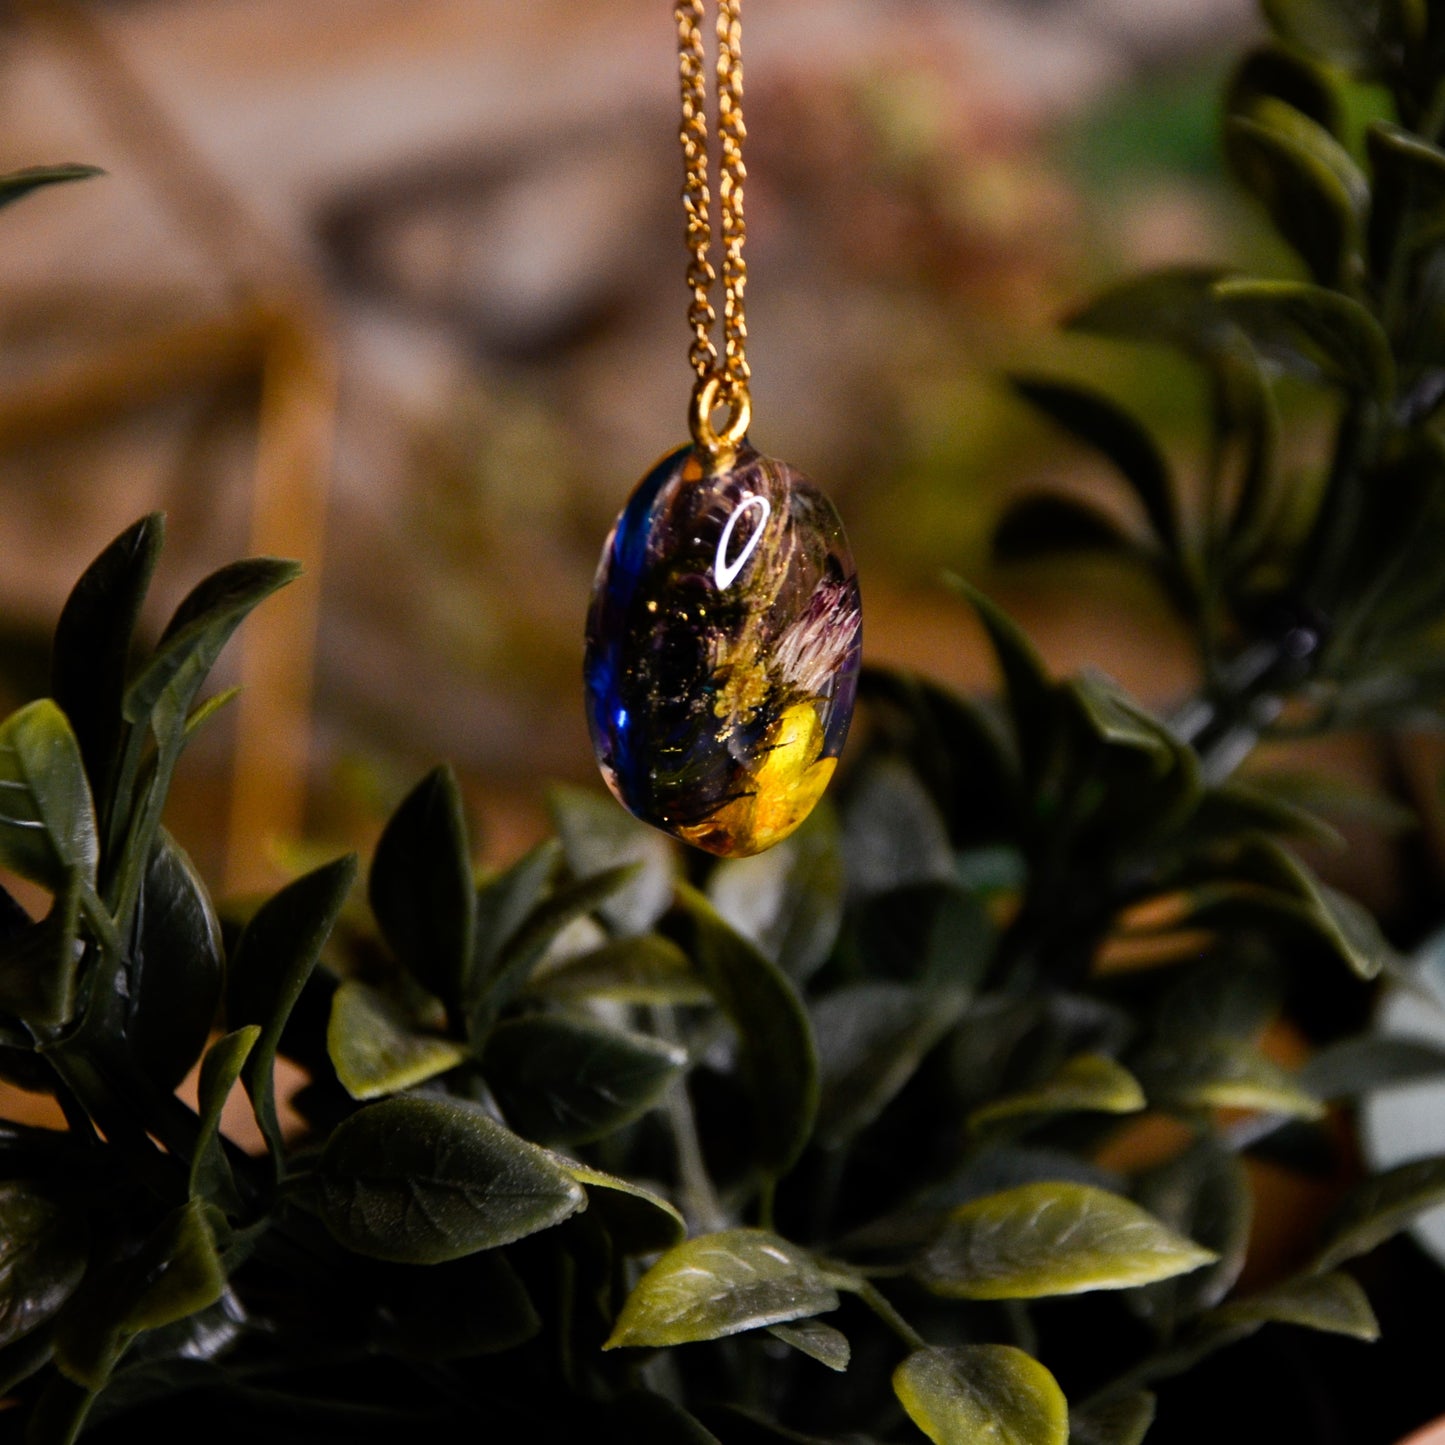 Naszyjnik owalny z kompozycją kwiatową i jaskrem na dole - kolor złoty, fioletowy